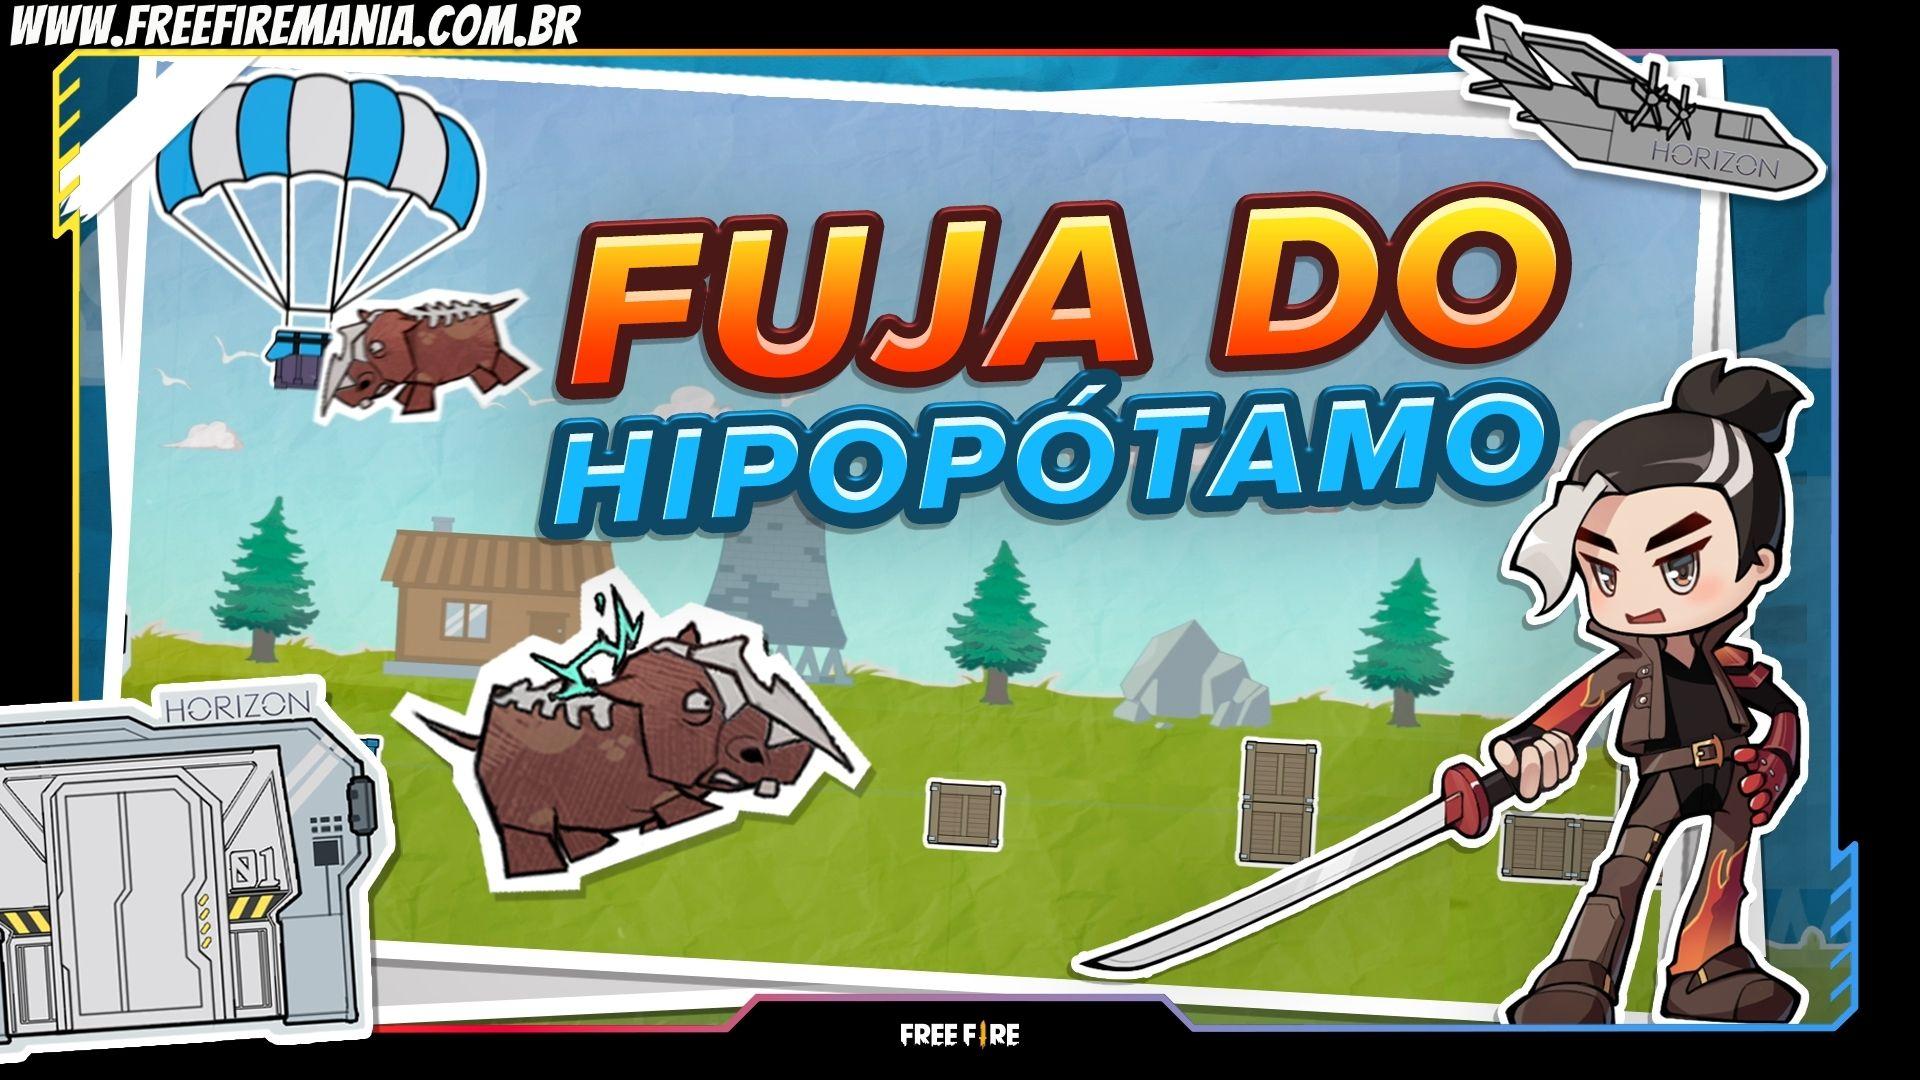 Free Fire lança web evento “Fuja do Hipopótamo” com recompensas gratuitas